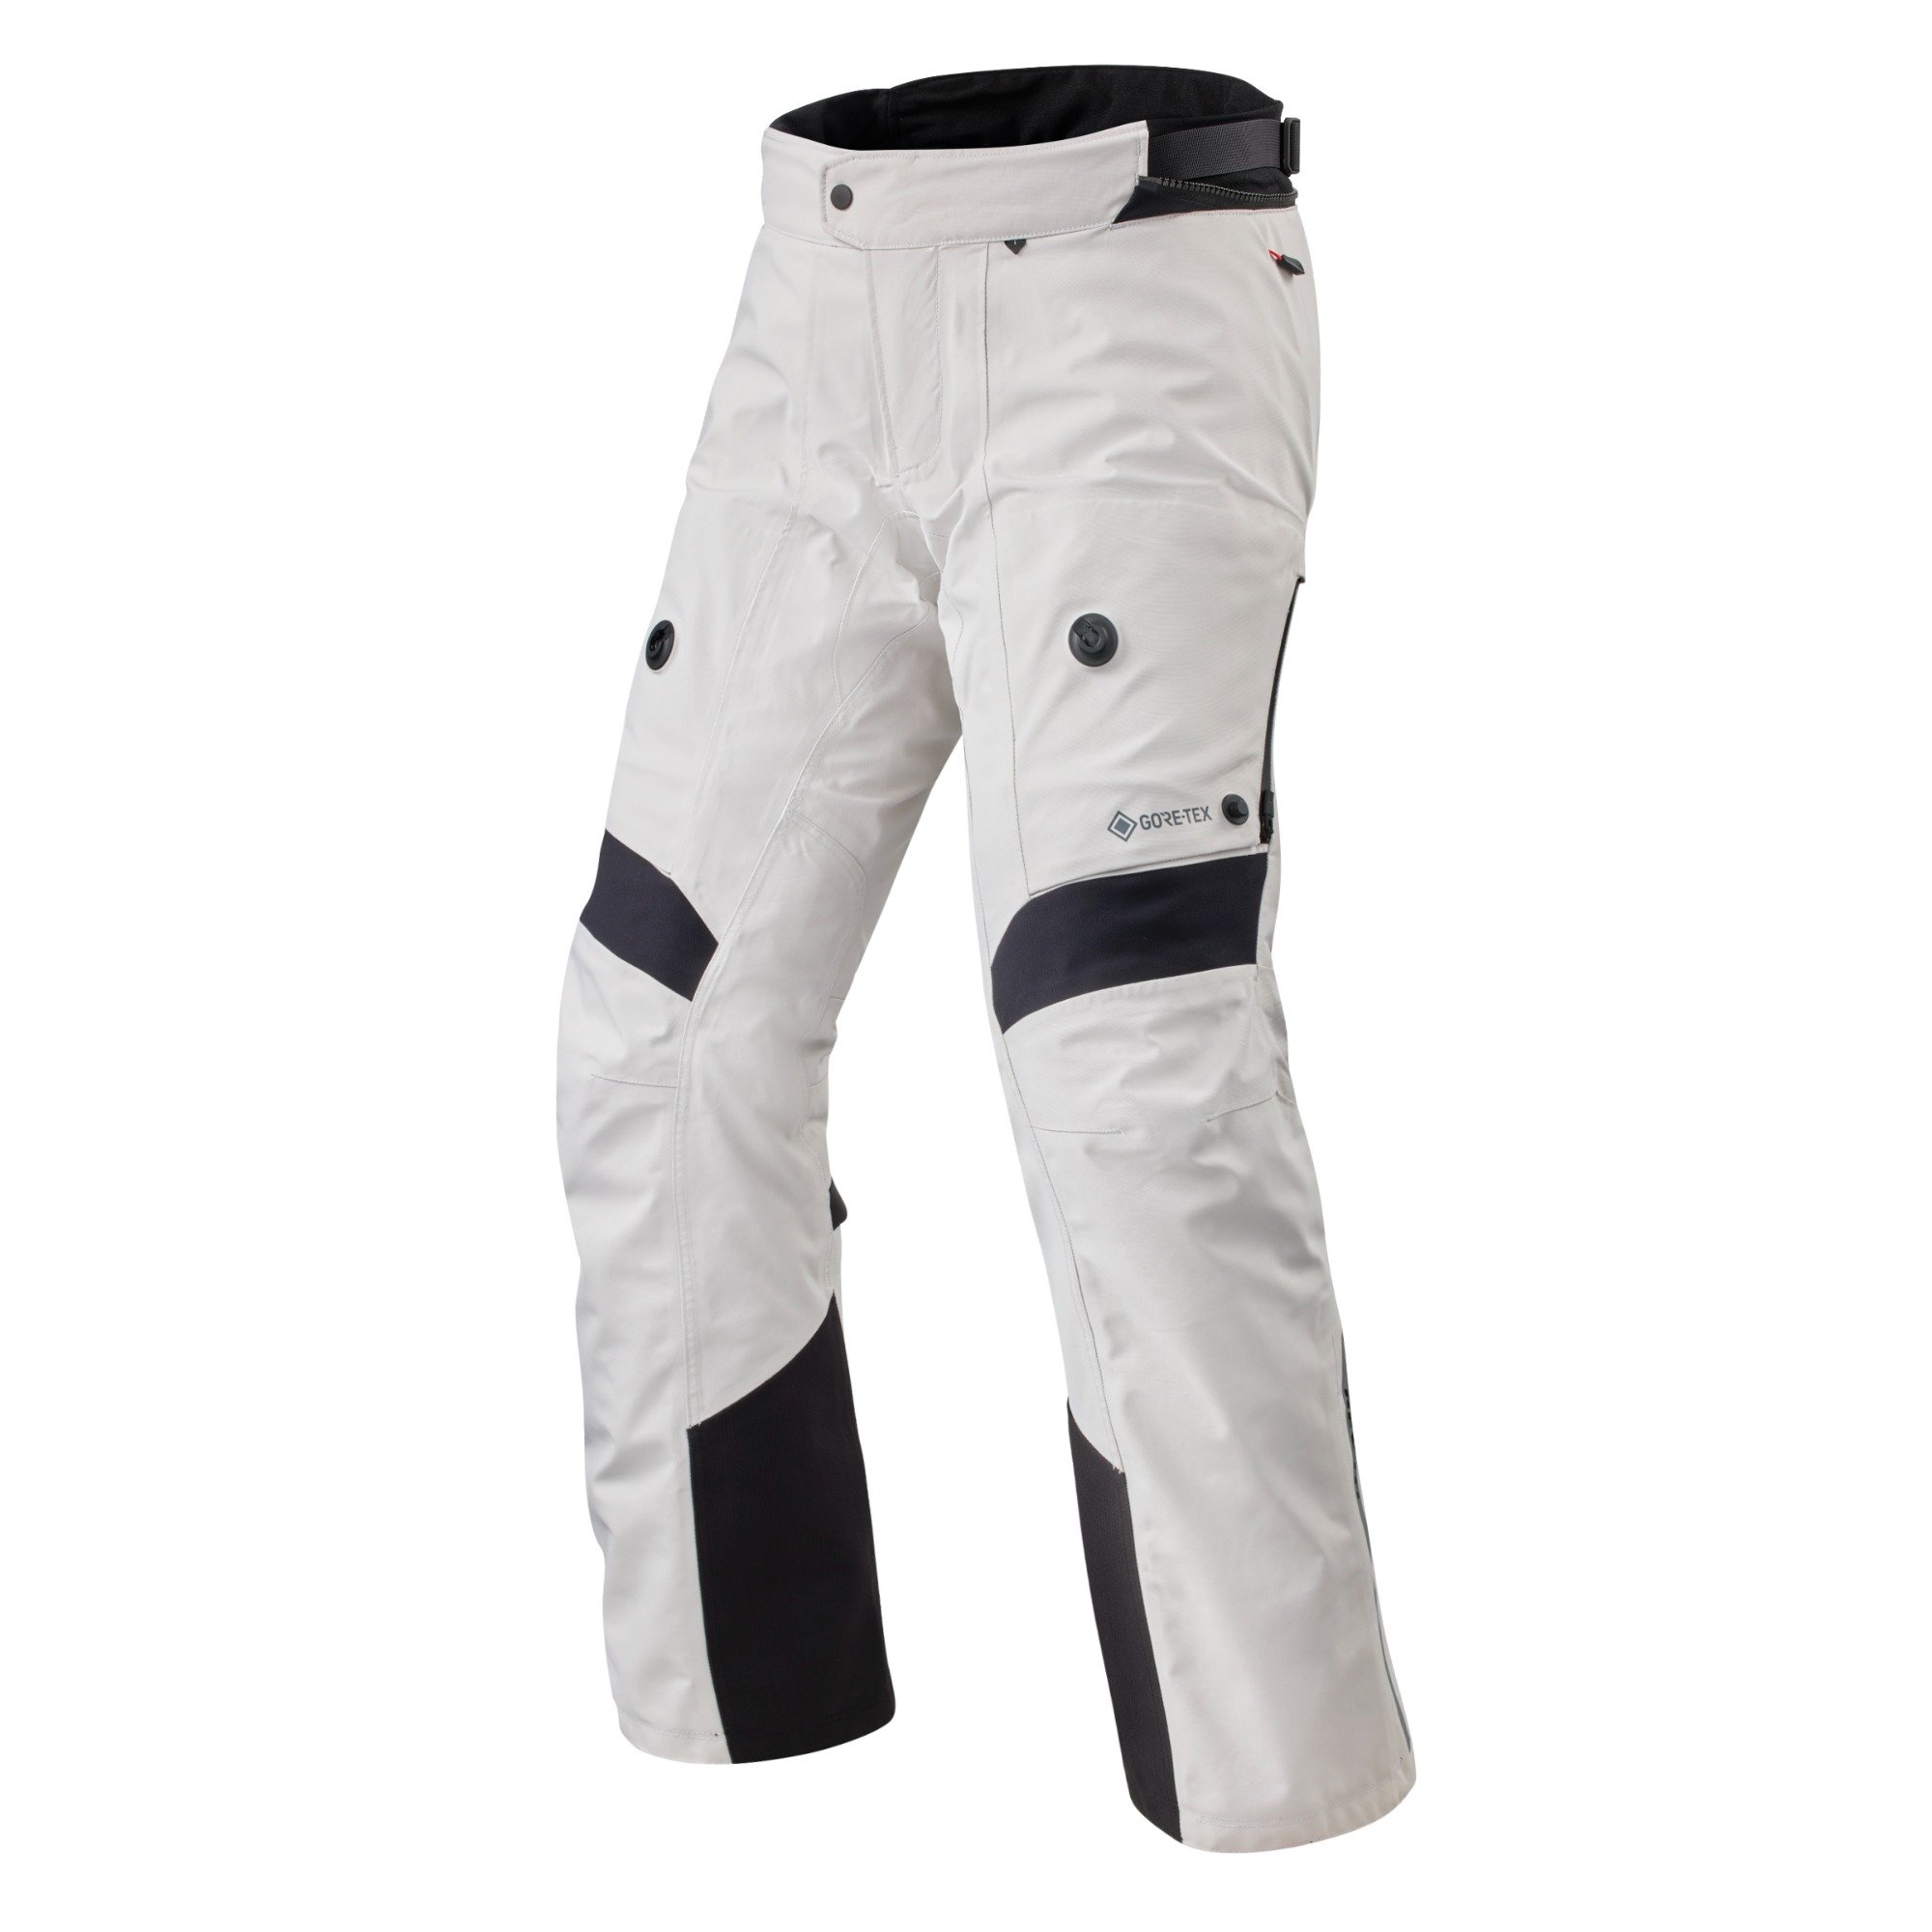 Image of REV'IT! Pants Poseidon 3 GTX Silver Black Long Motorcycle Pants Size XL EN